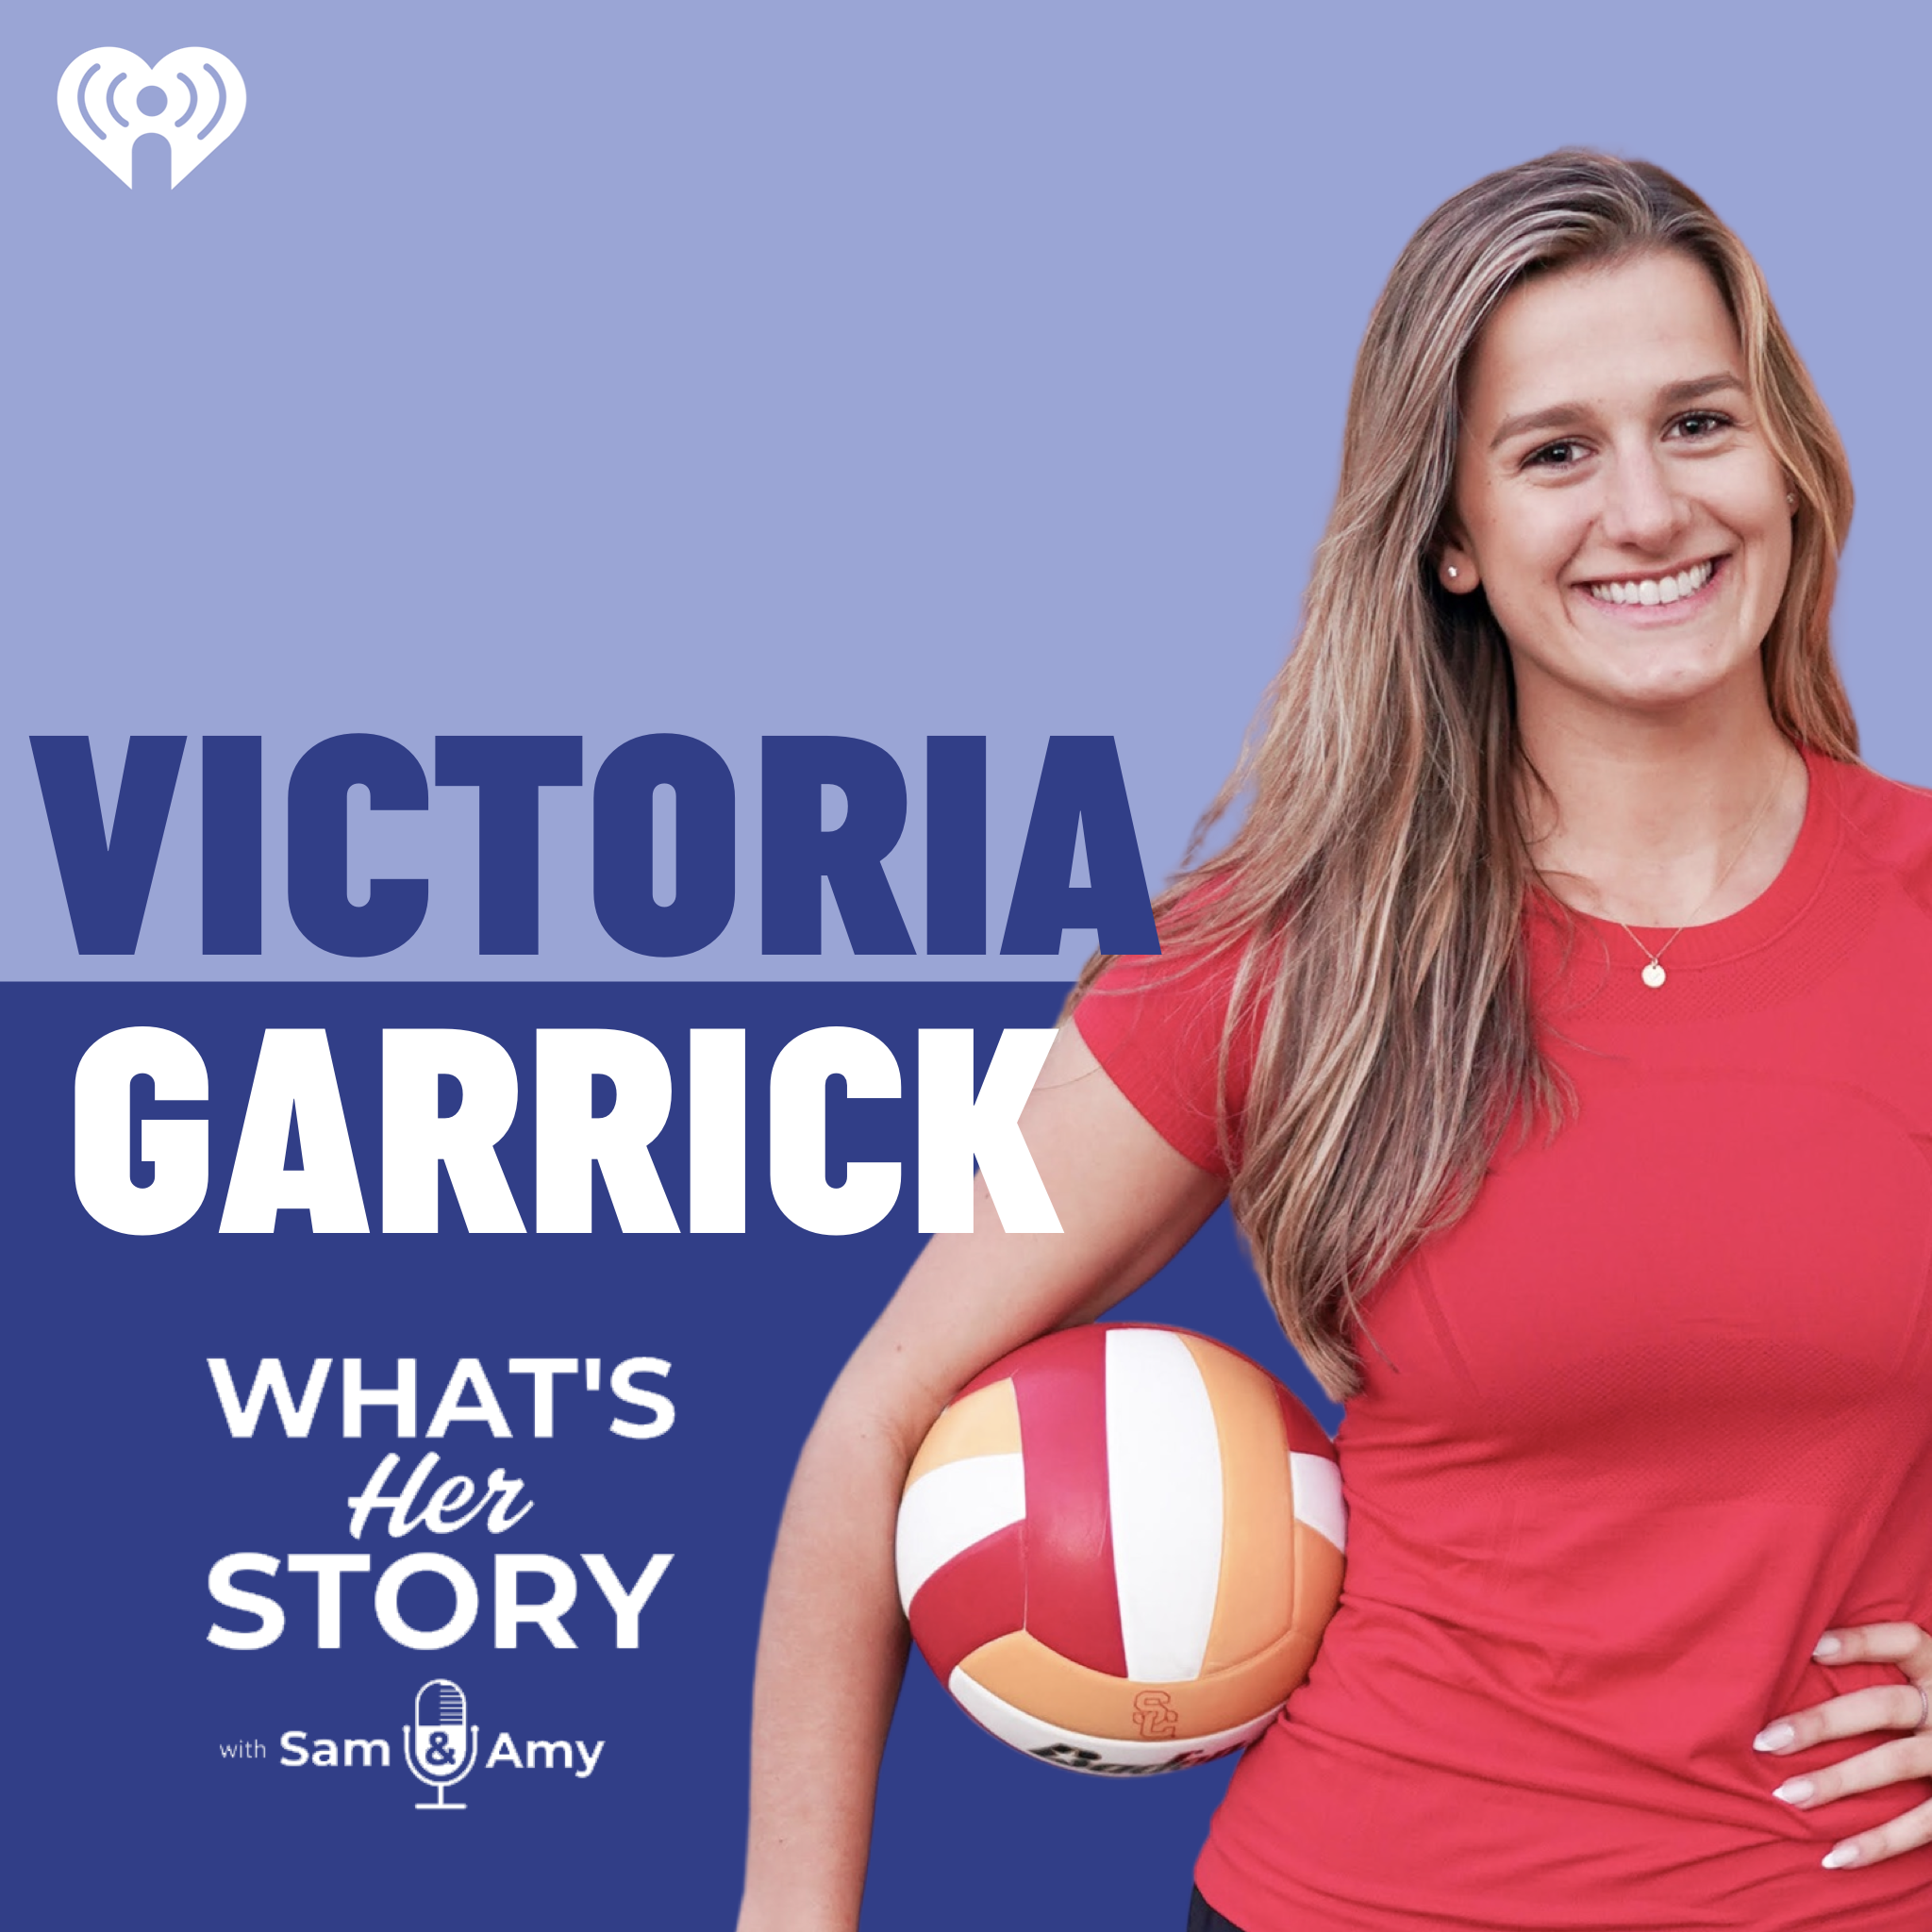 Victoria Garrick